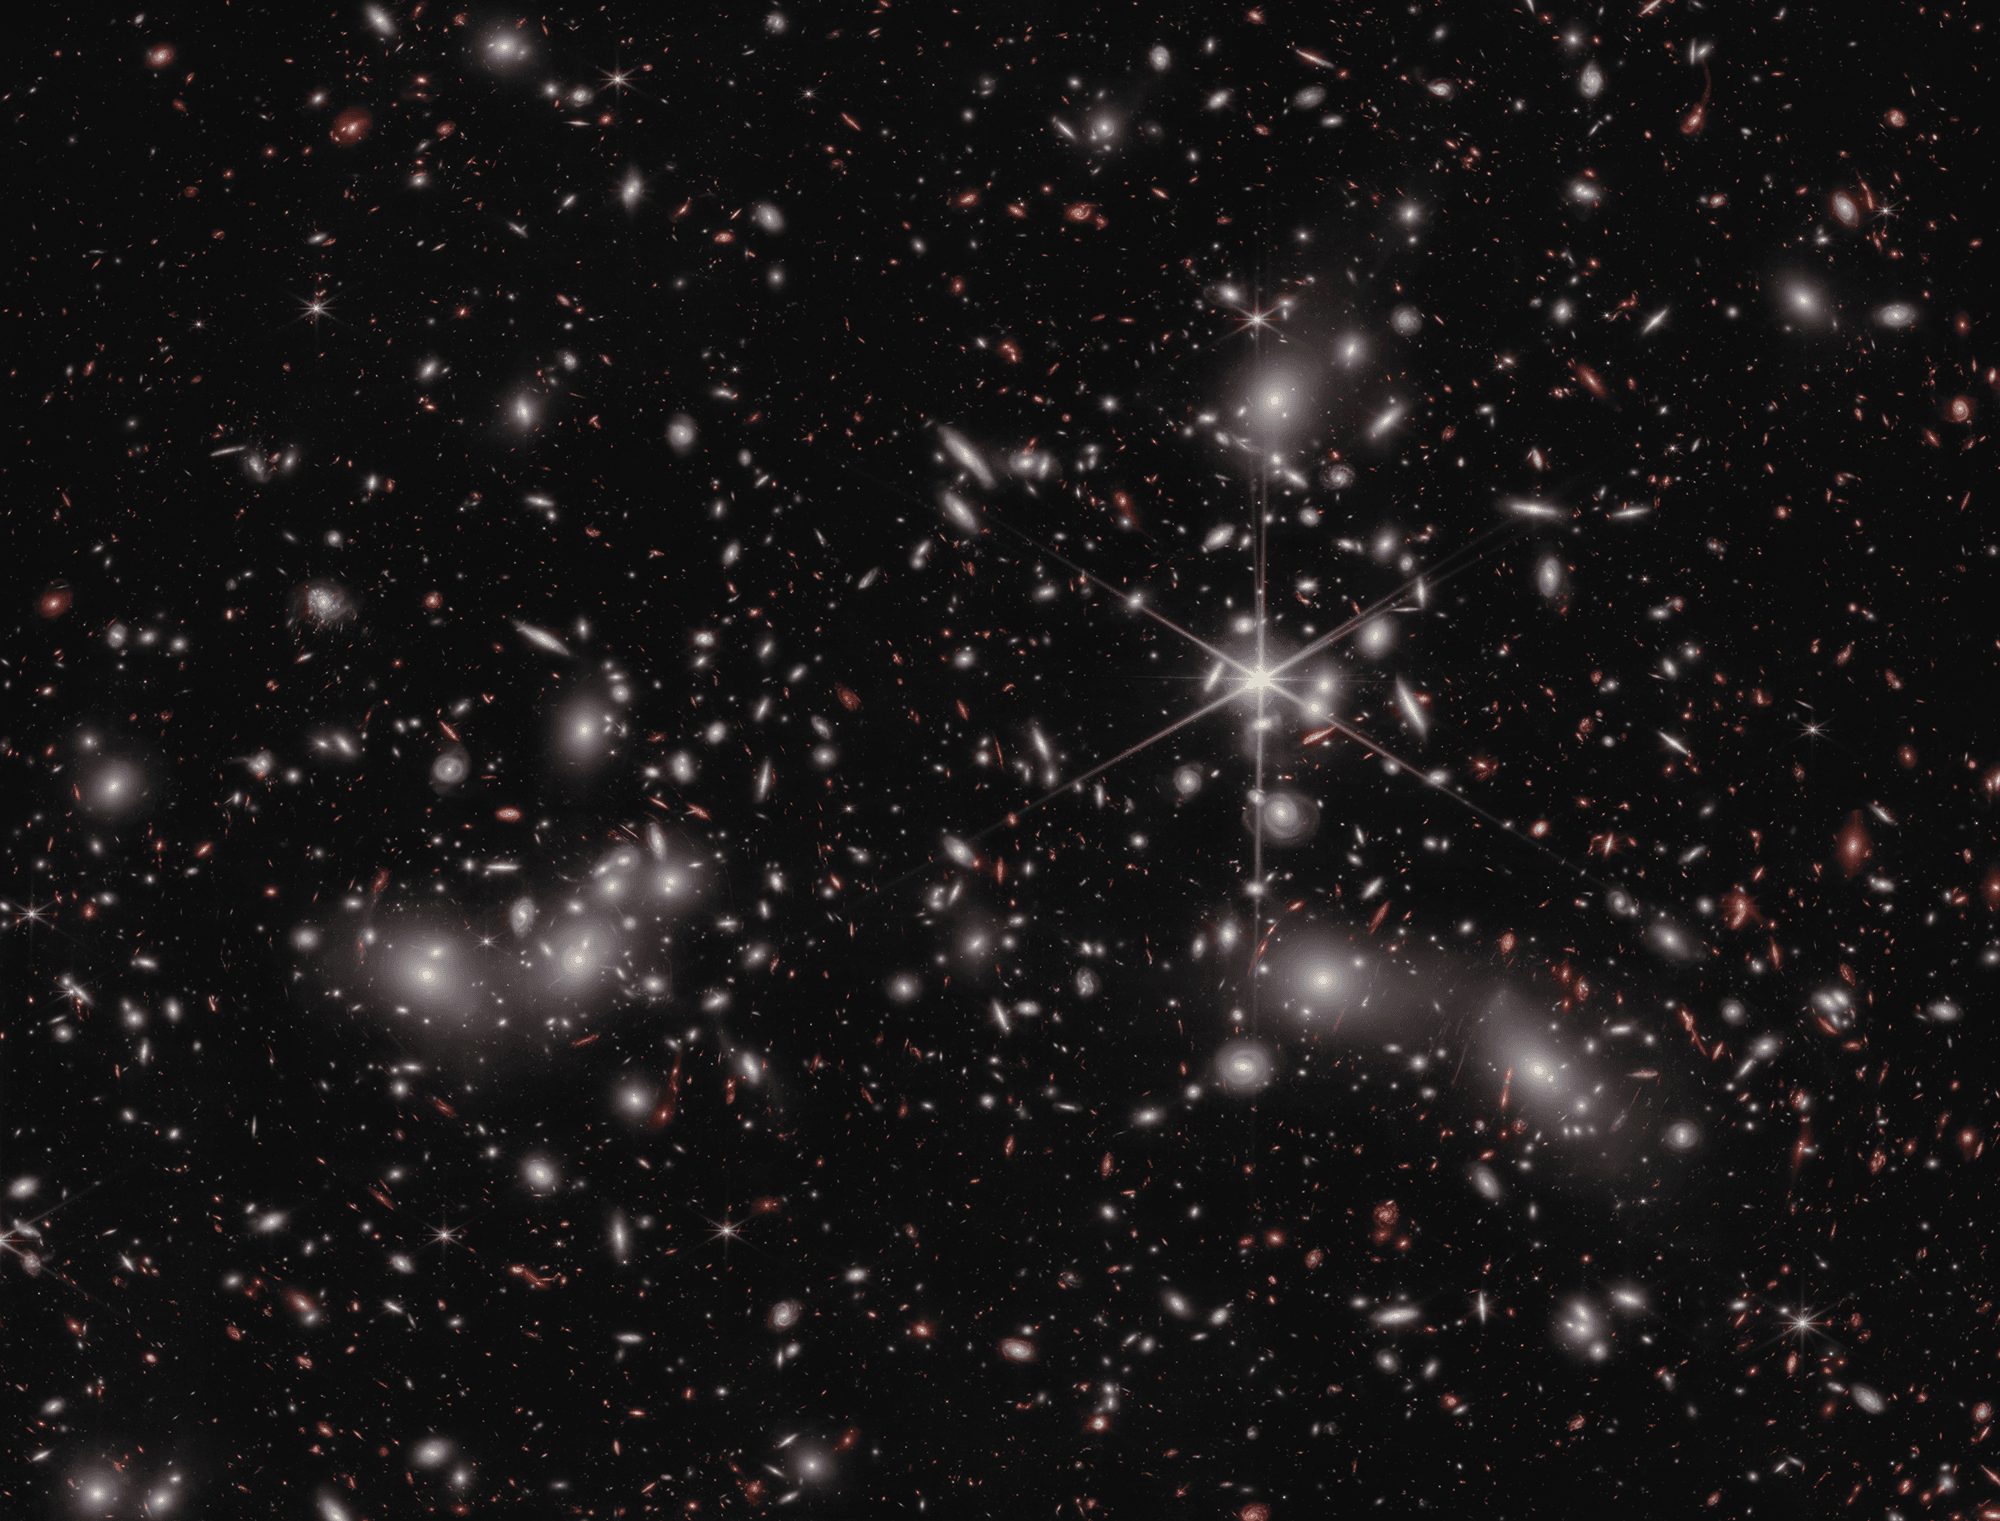 العديد من المجرّات المتناثرة عبر الصورة بعضها أحمر مُعدّس ثقاليّاً في الخلفيّة البعيدة، في حين تظهر بعض نجوم المقدّمة المدبّبة